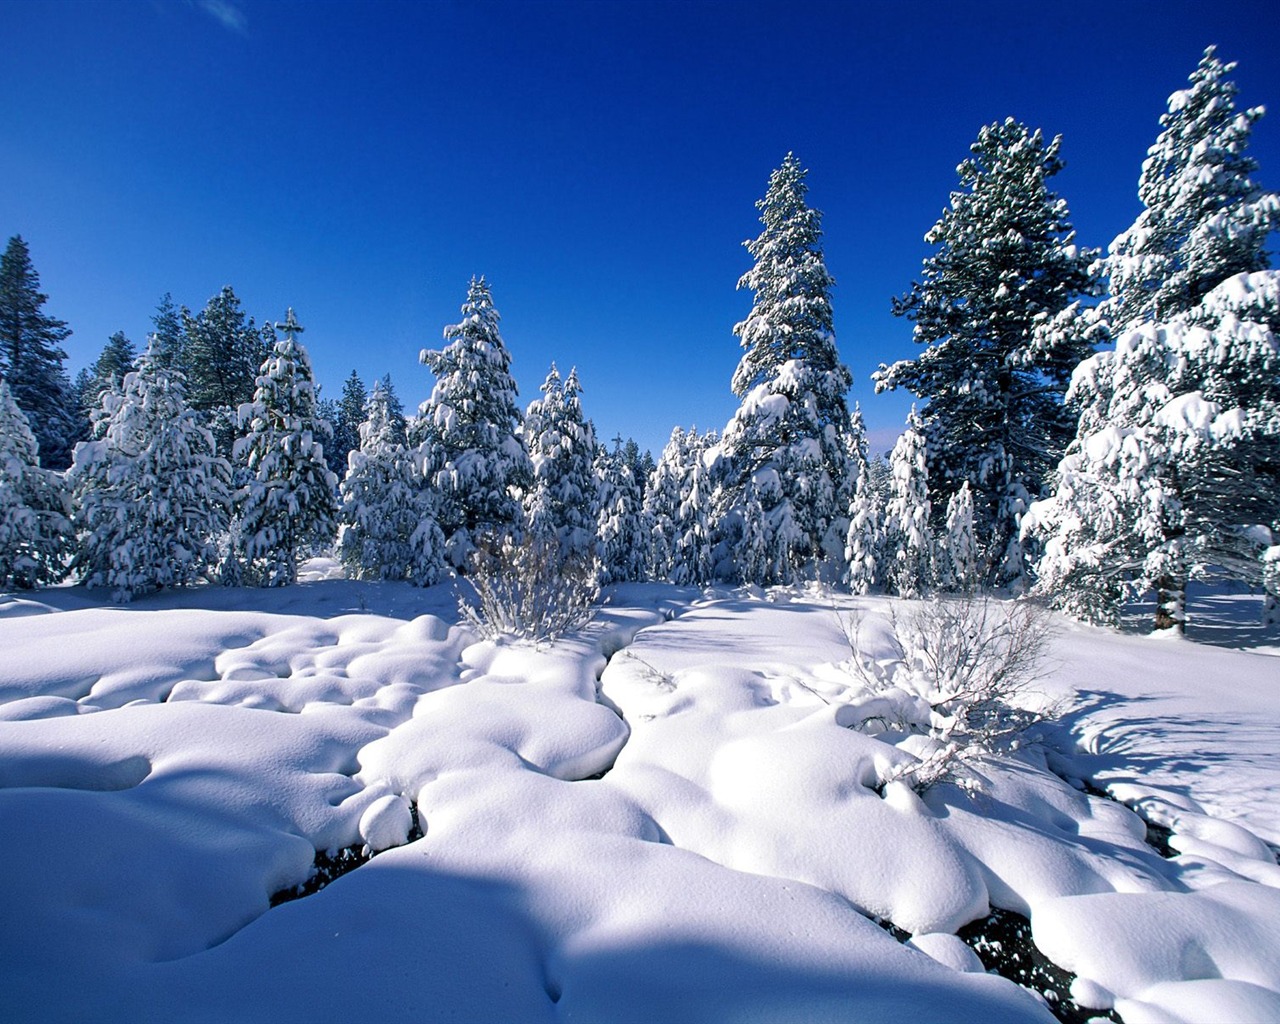 冬天雪景壁纸(二)4 - 1280x1024